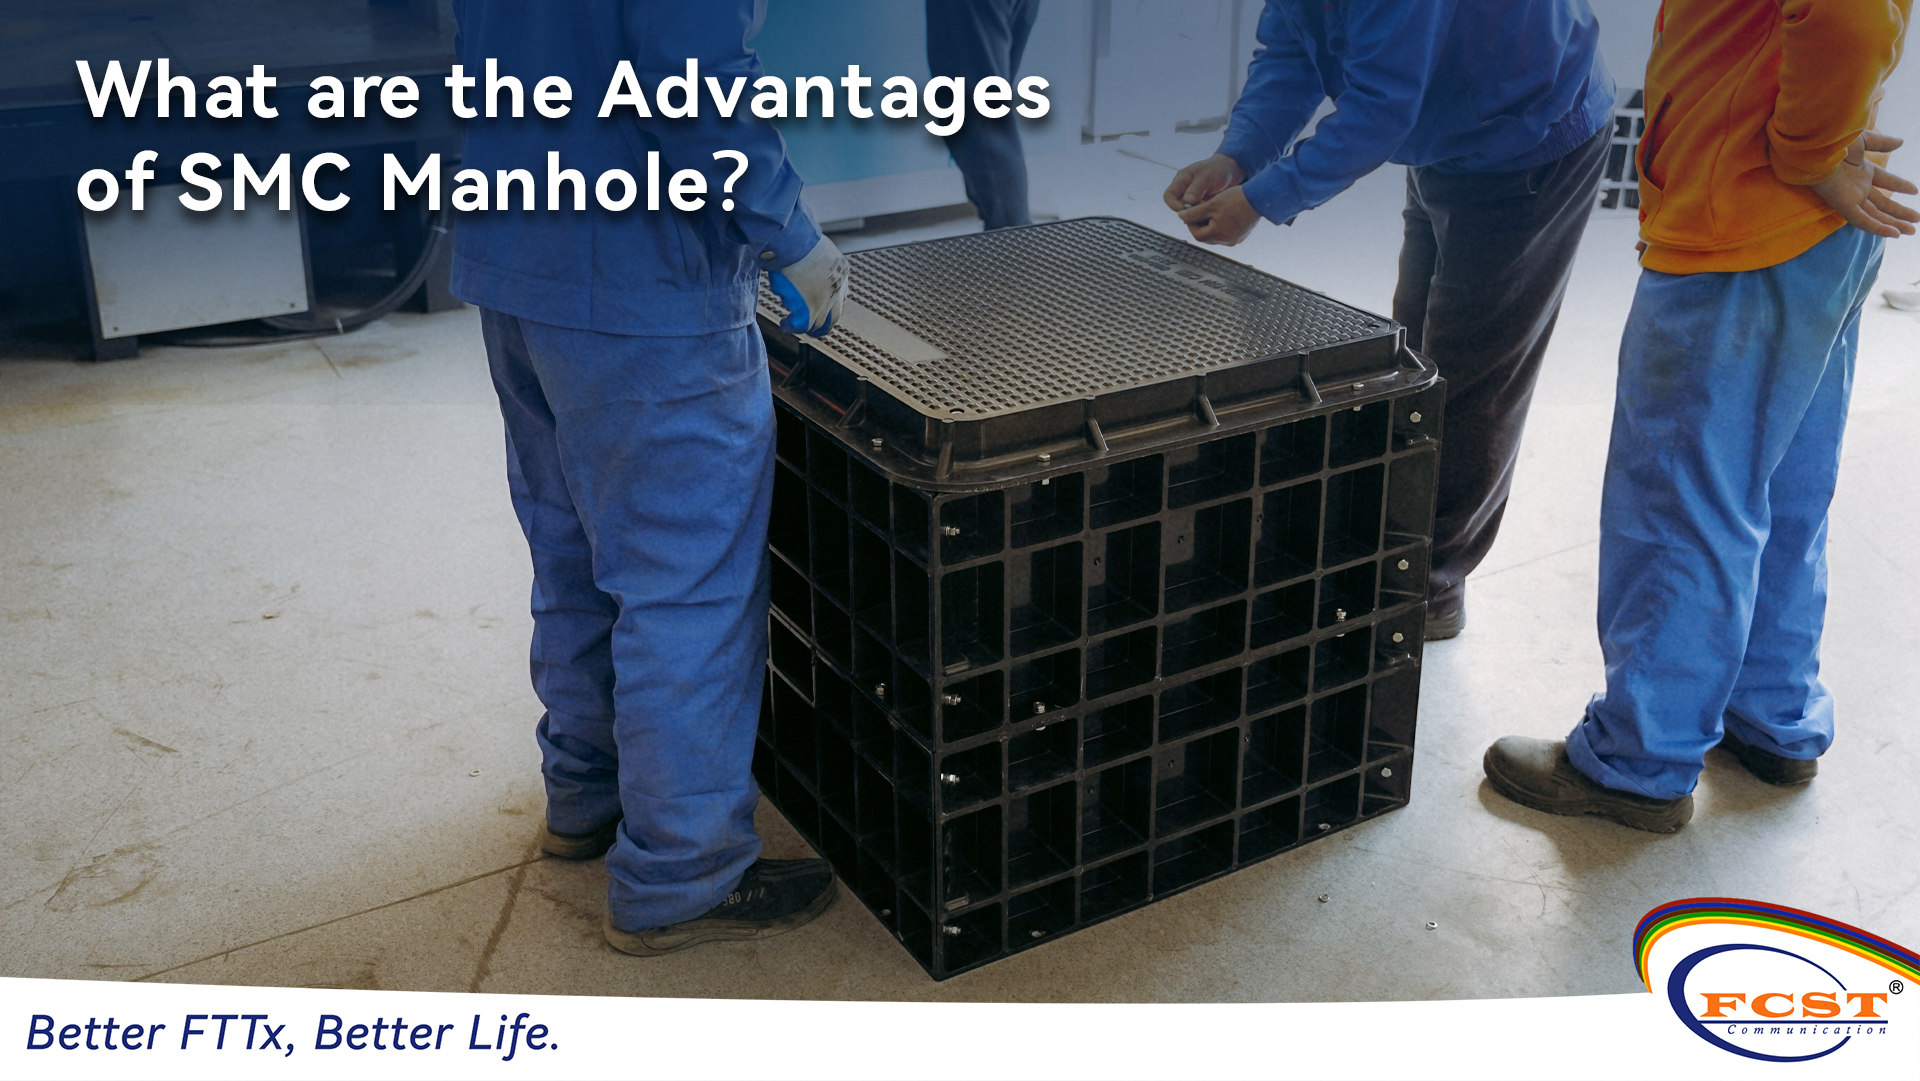 ¿Cuáles son las ventajas de SMC Manhole？